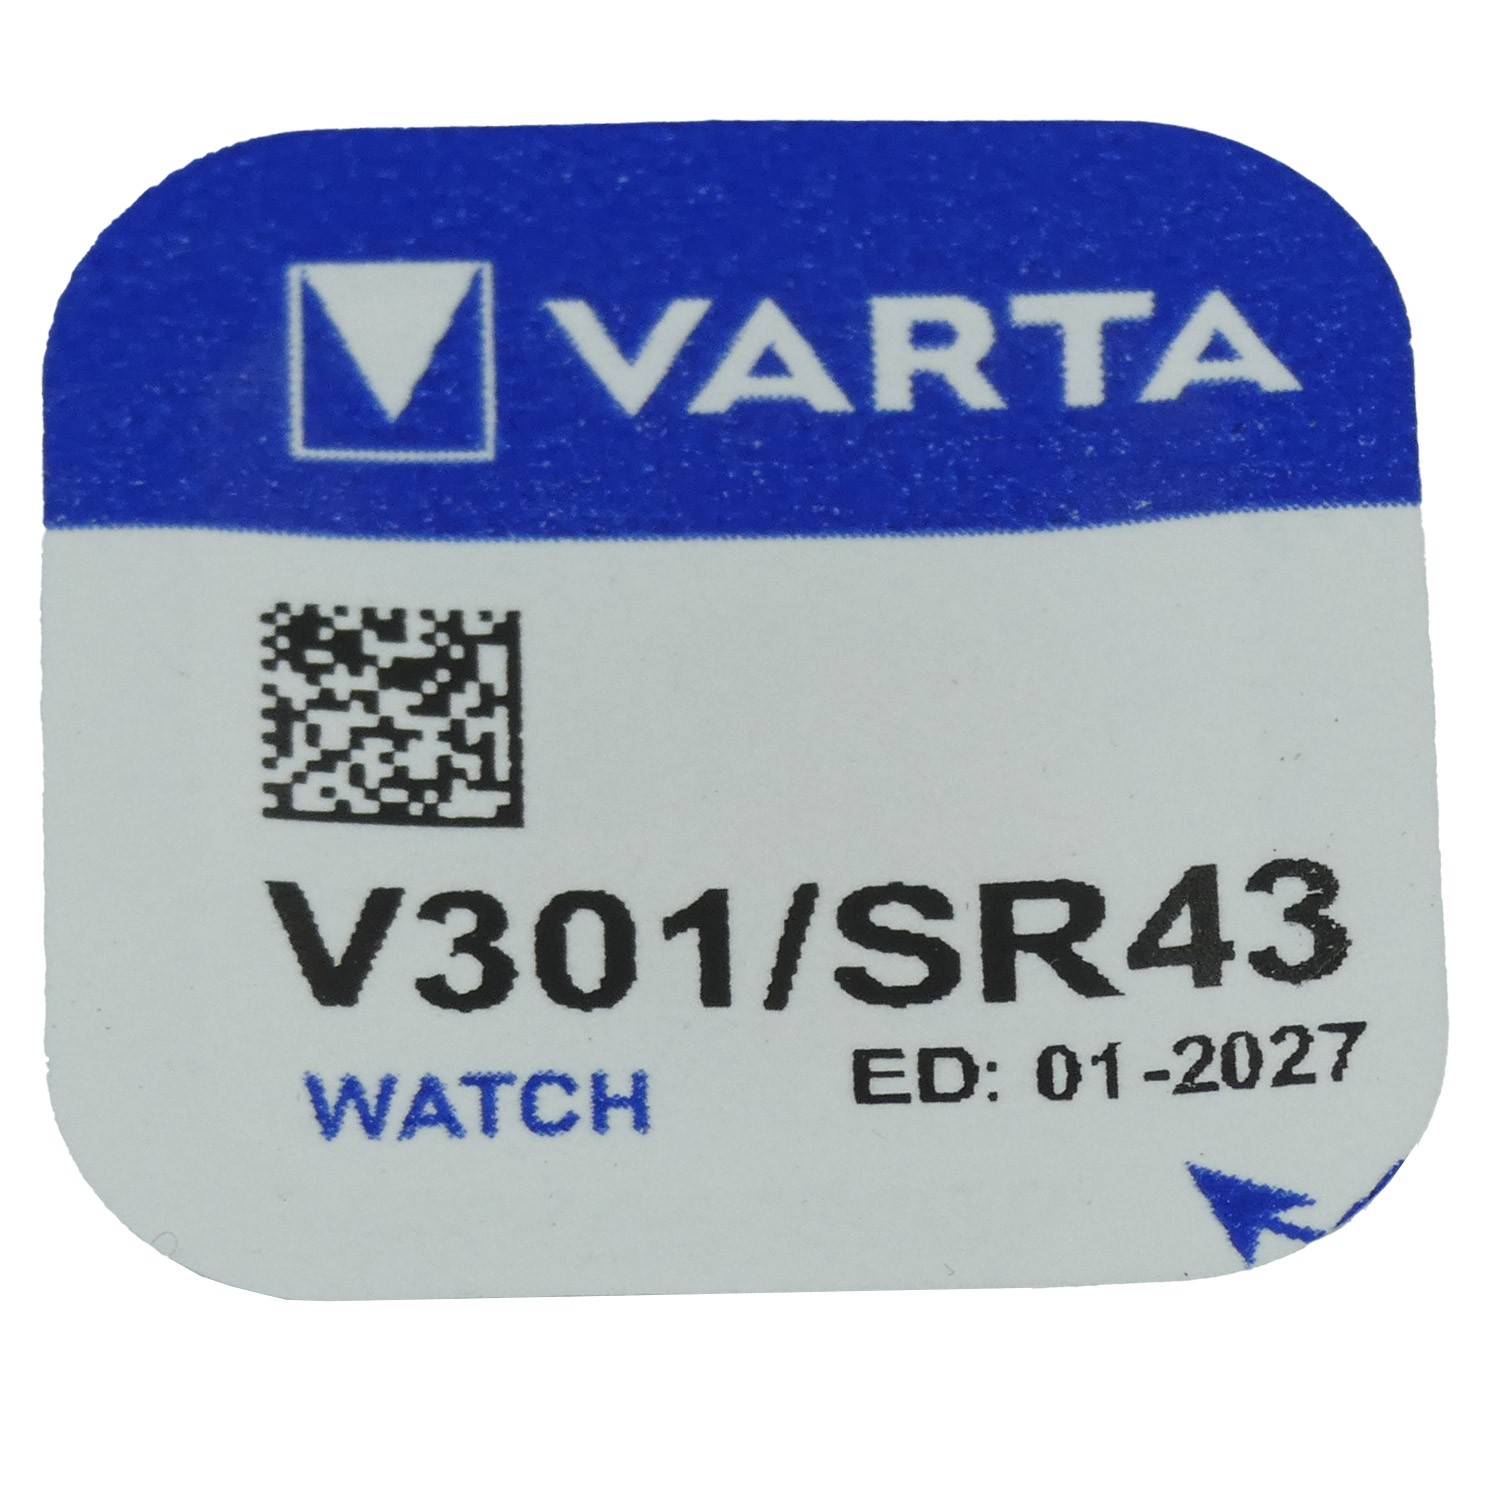 Varta Uhrenbatterie V301